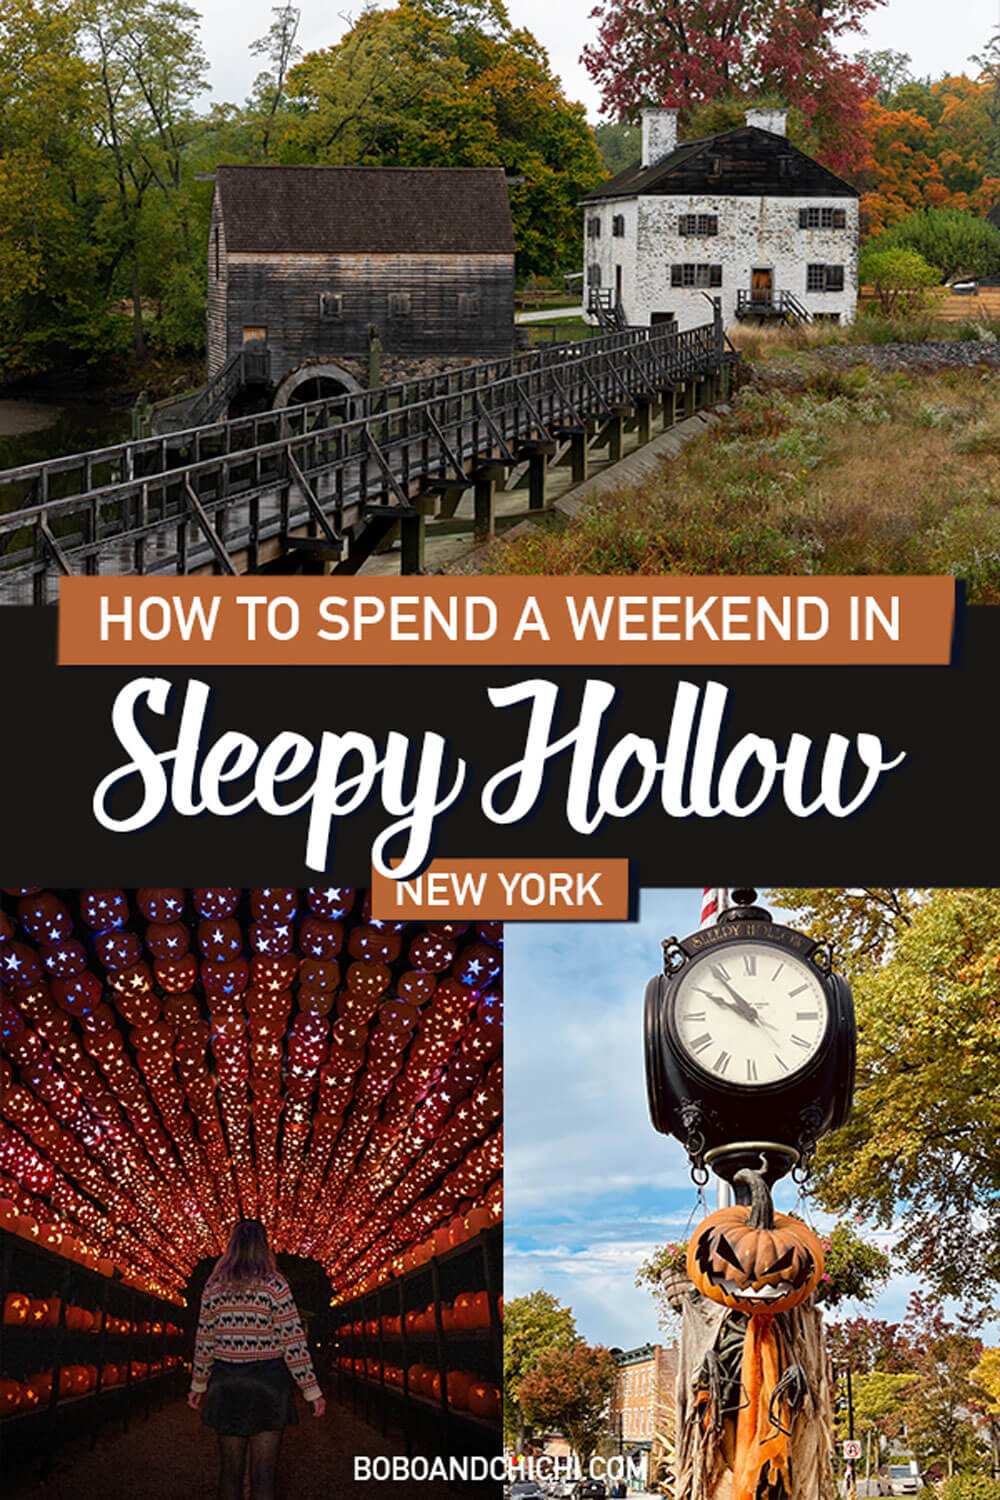 sleepy-hollow-new-york-weekend-getaway